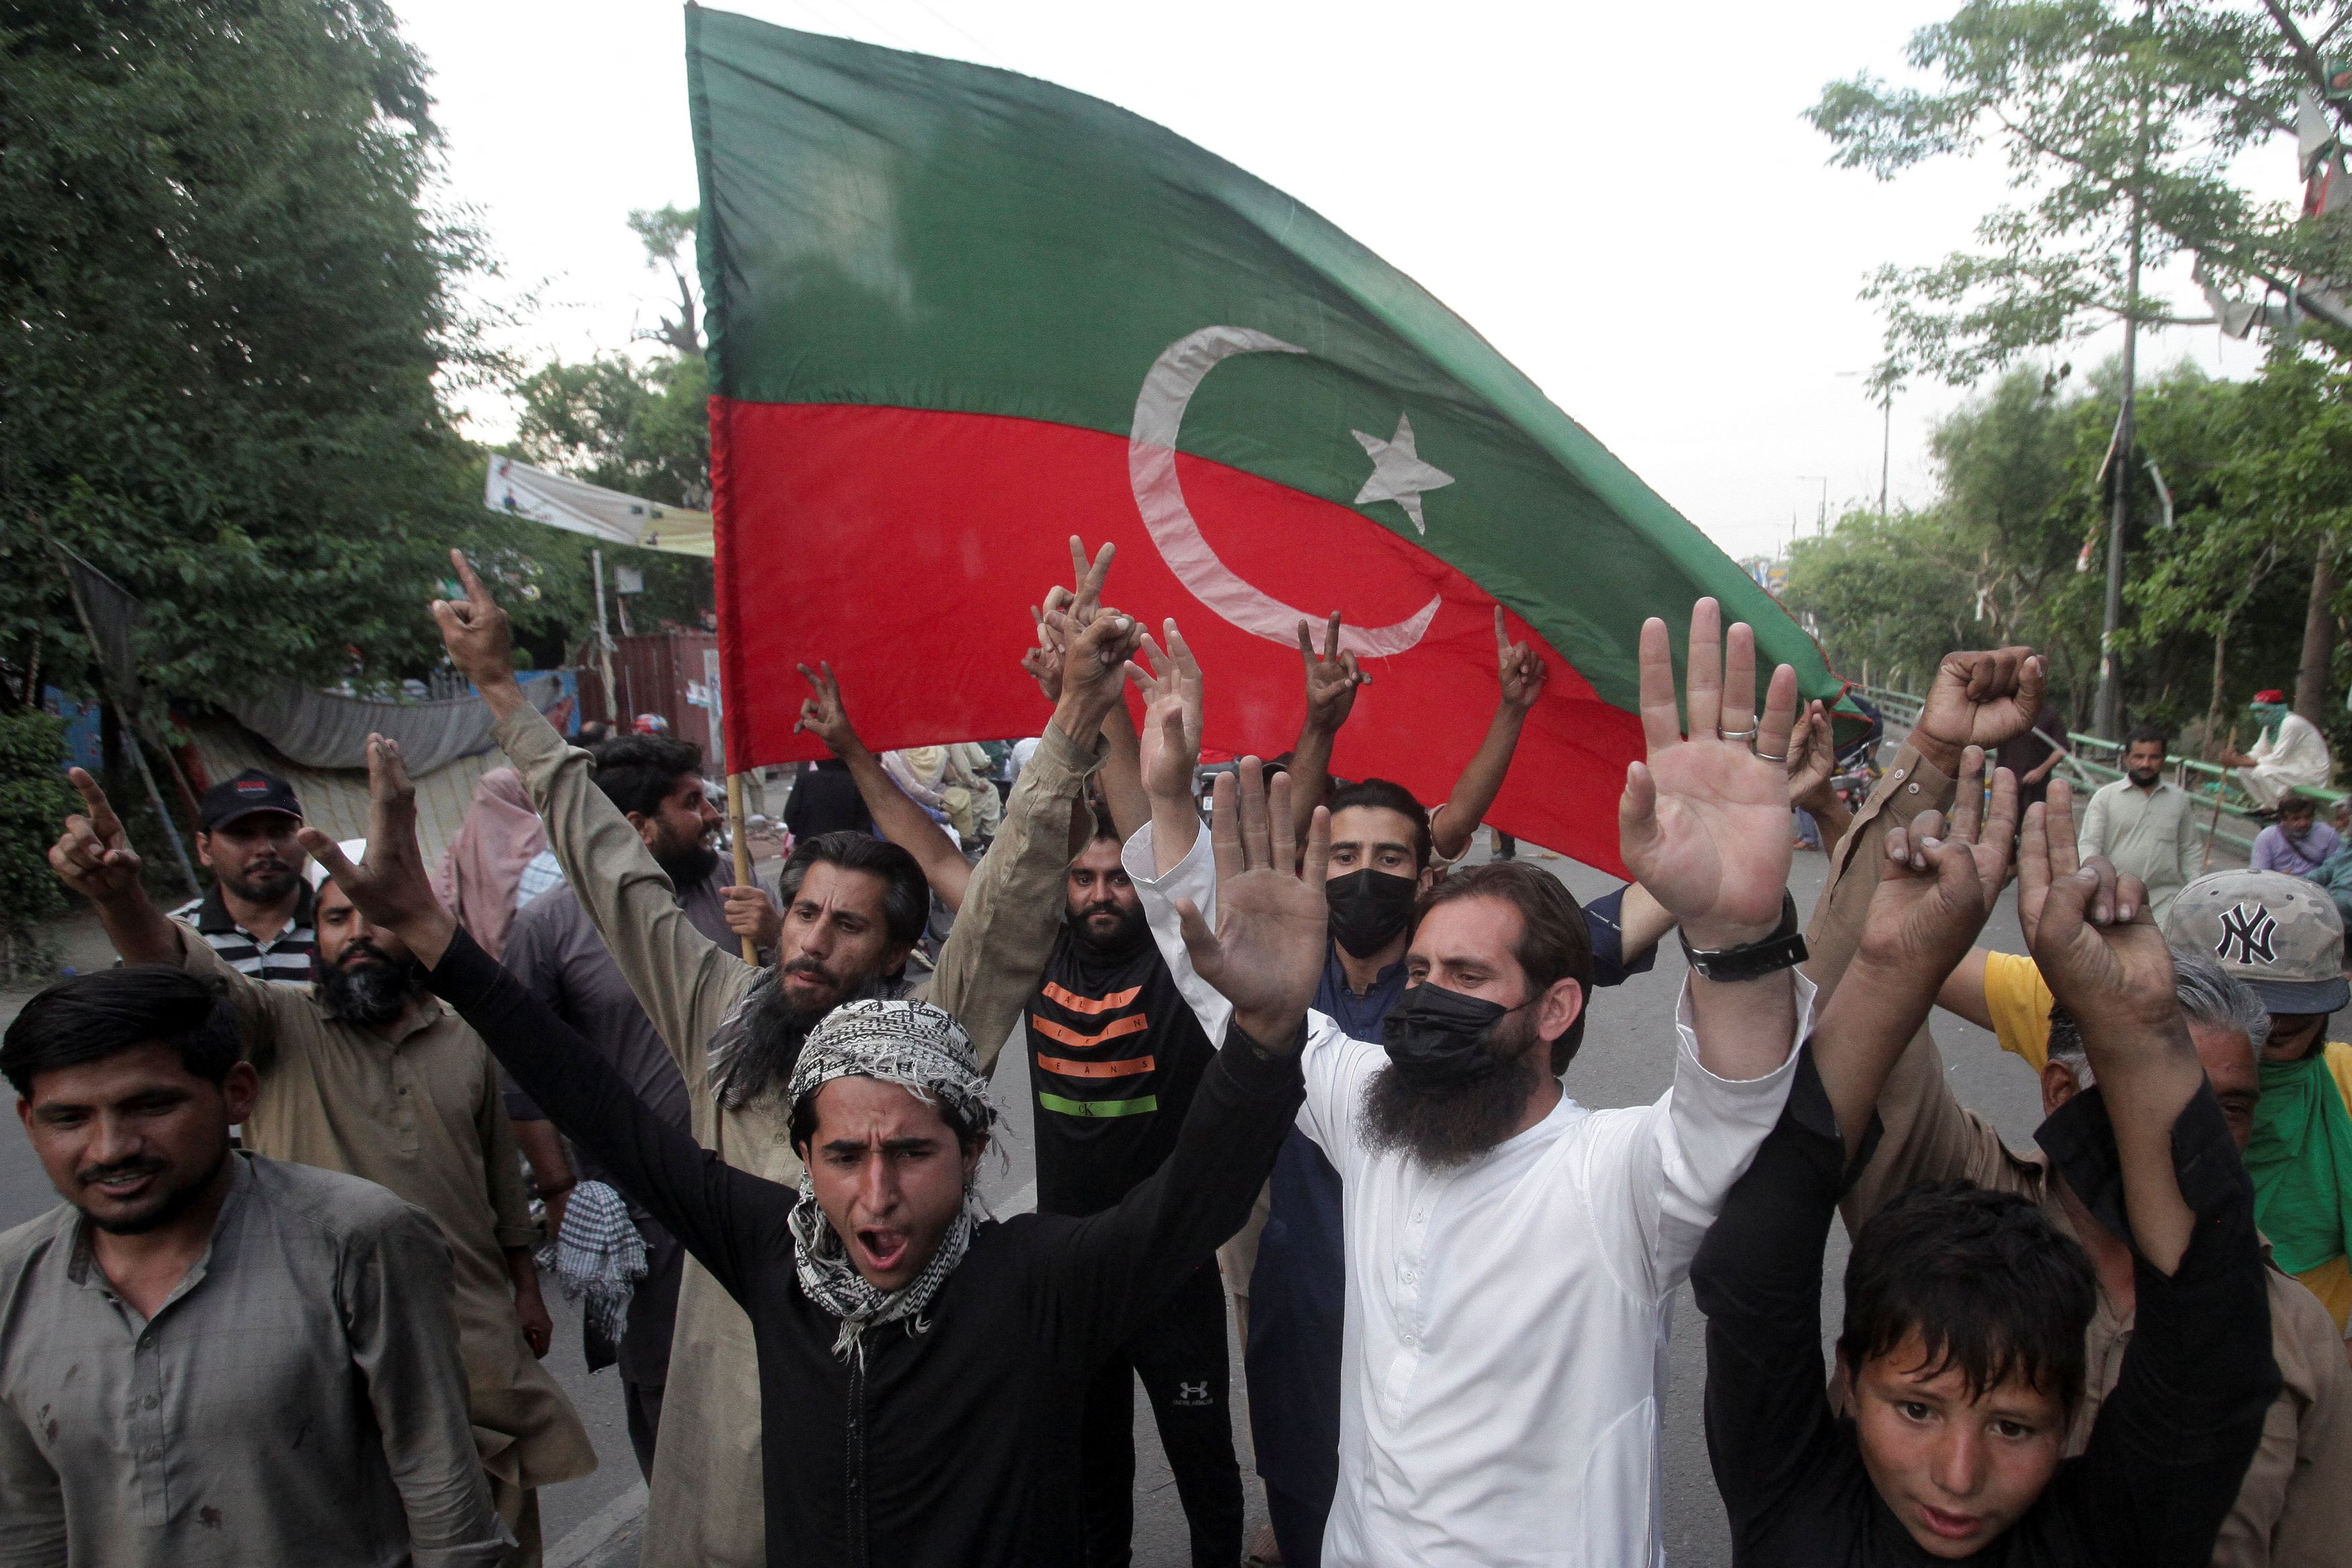 Ιμράν Χαν: Απαγορεύτηκαν οι συγκεντρώσεις στην πρωτεύουσα του Πακιστάν λόγω κινητοποιήσεων από τους υποστηρικτές του